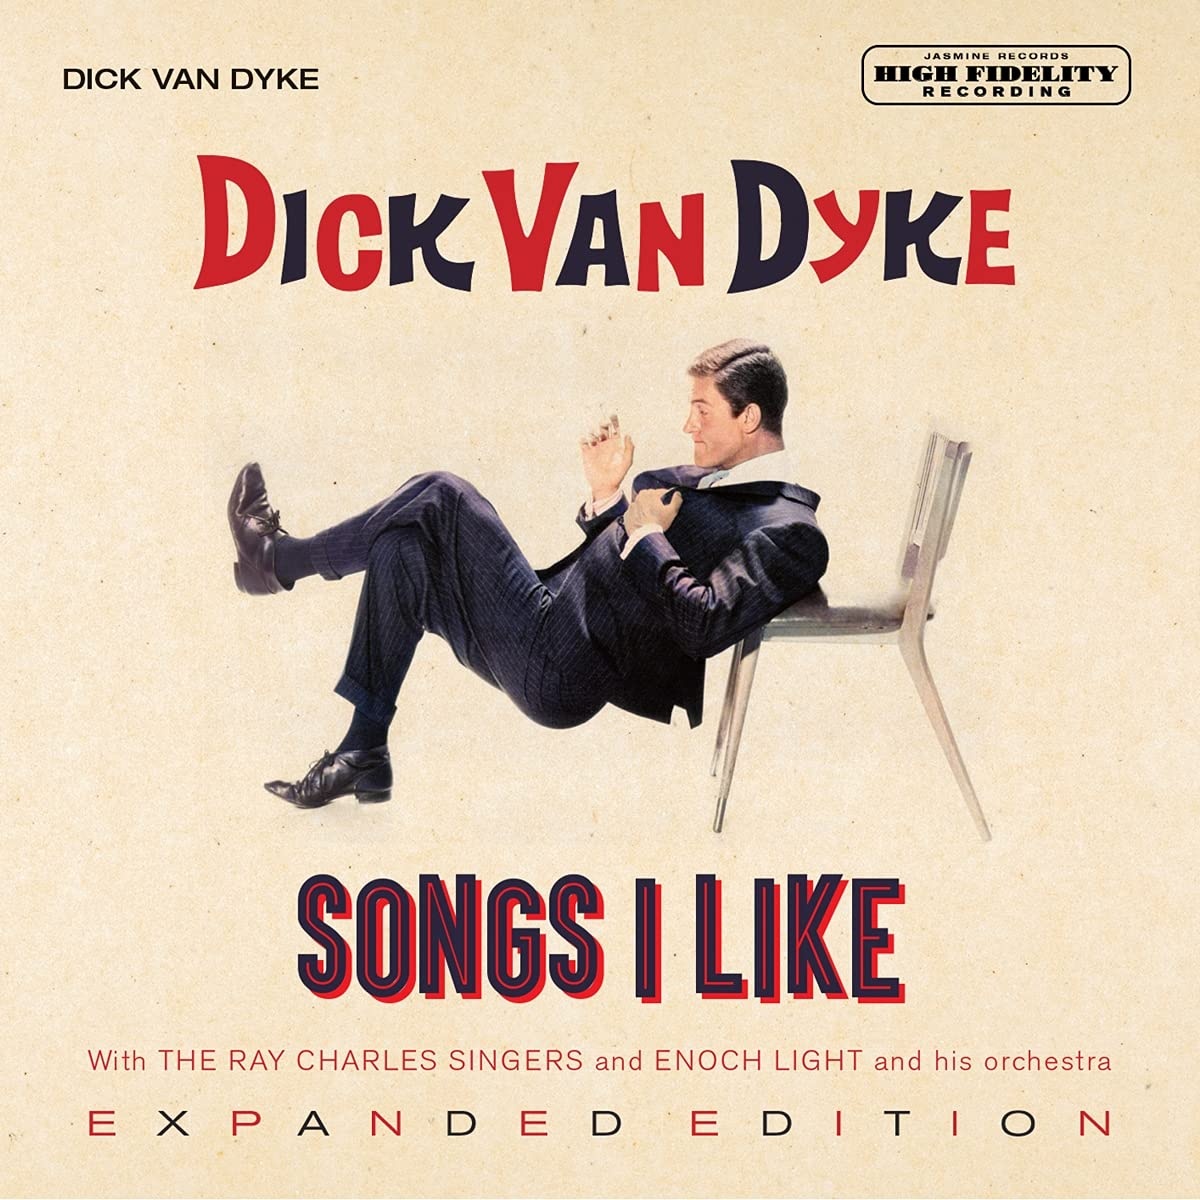 Dick van dyke song on masked singer